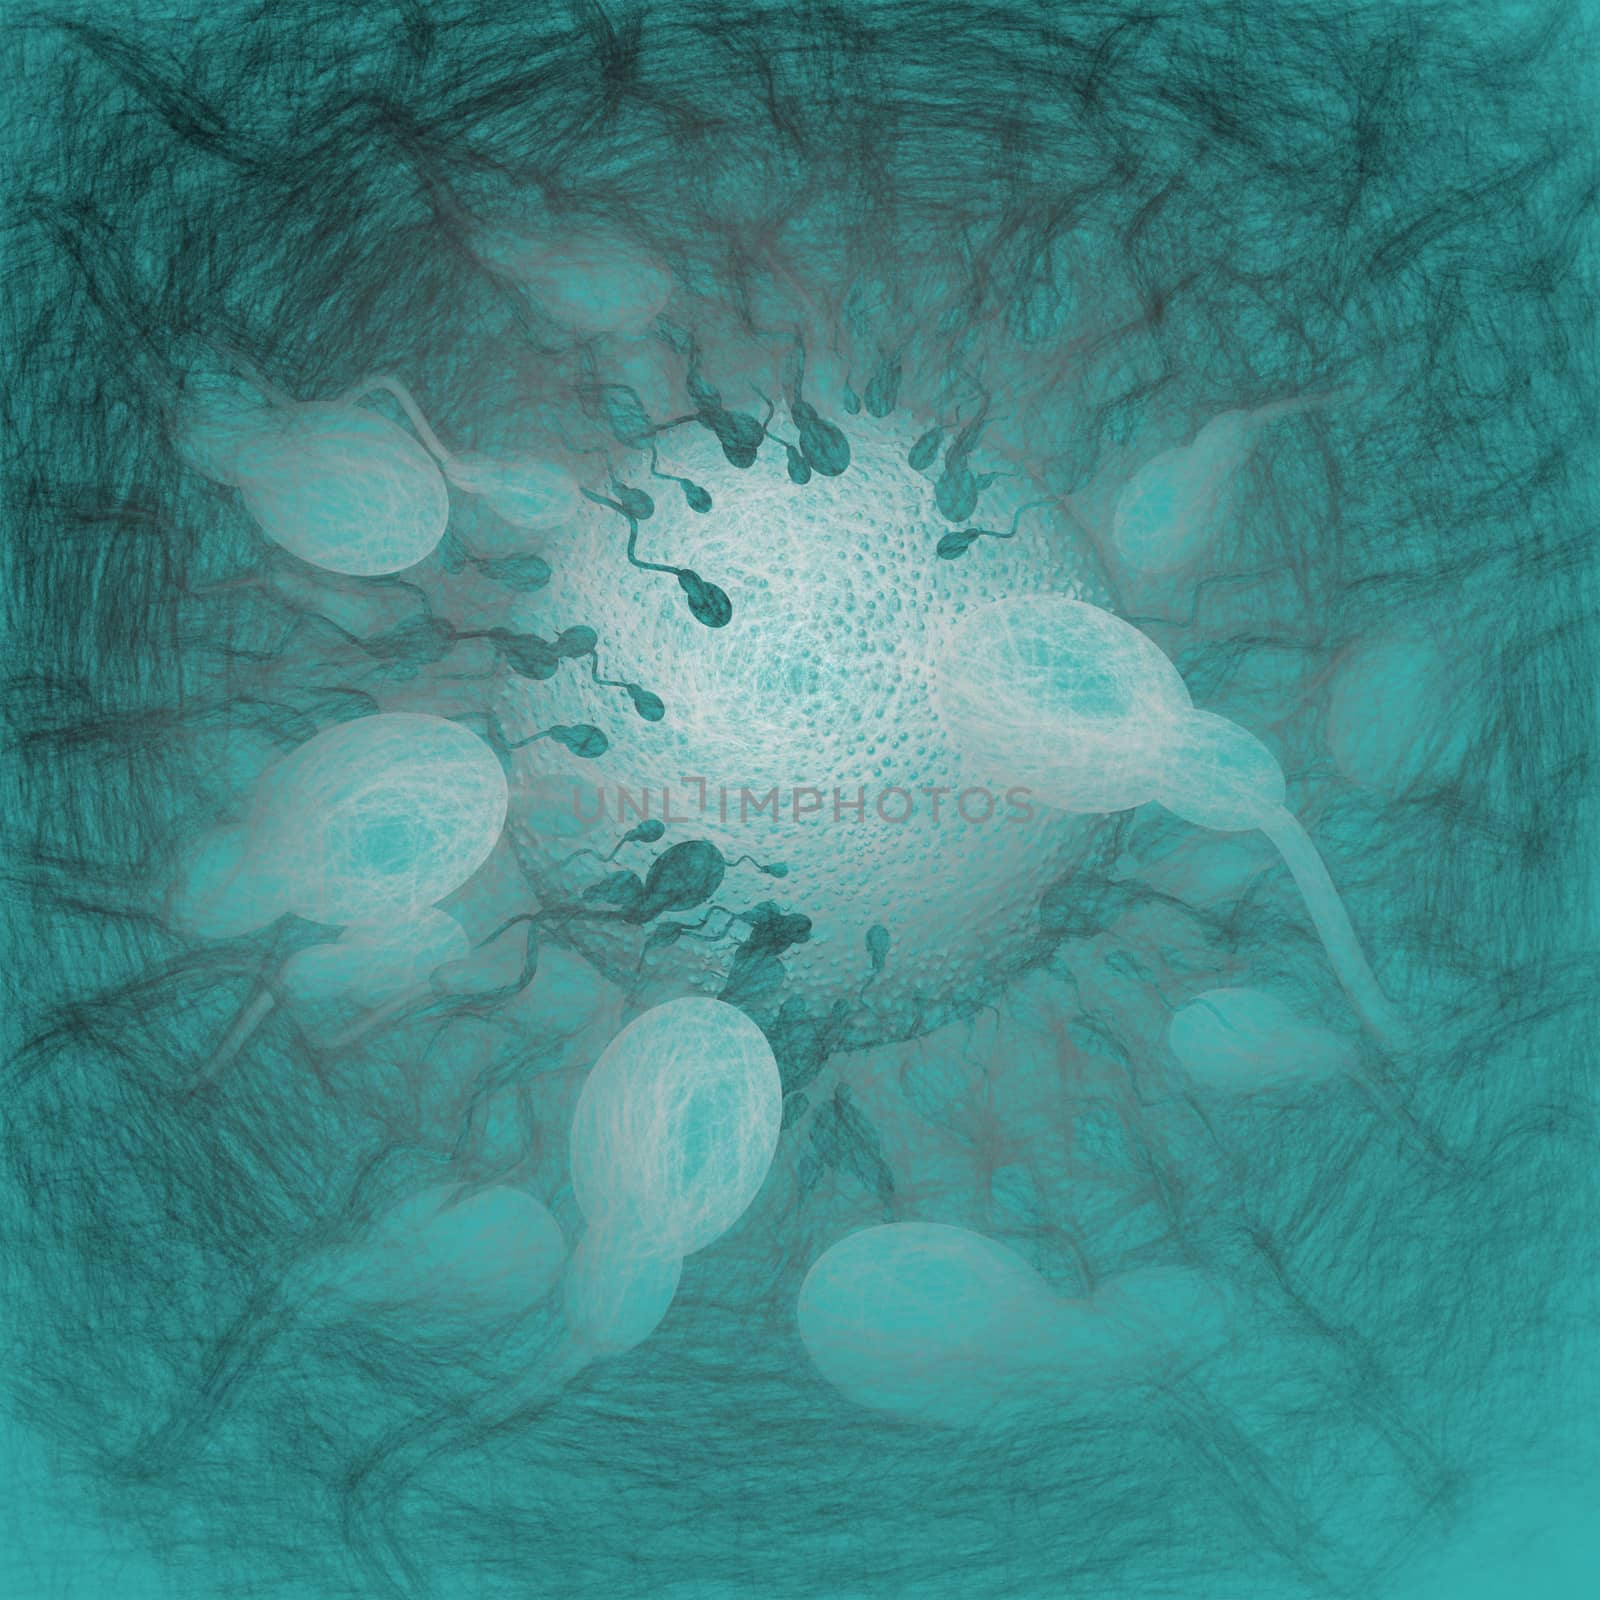 Digital 3d illustration of sperms heading towards egg